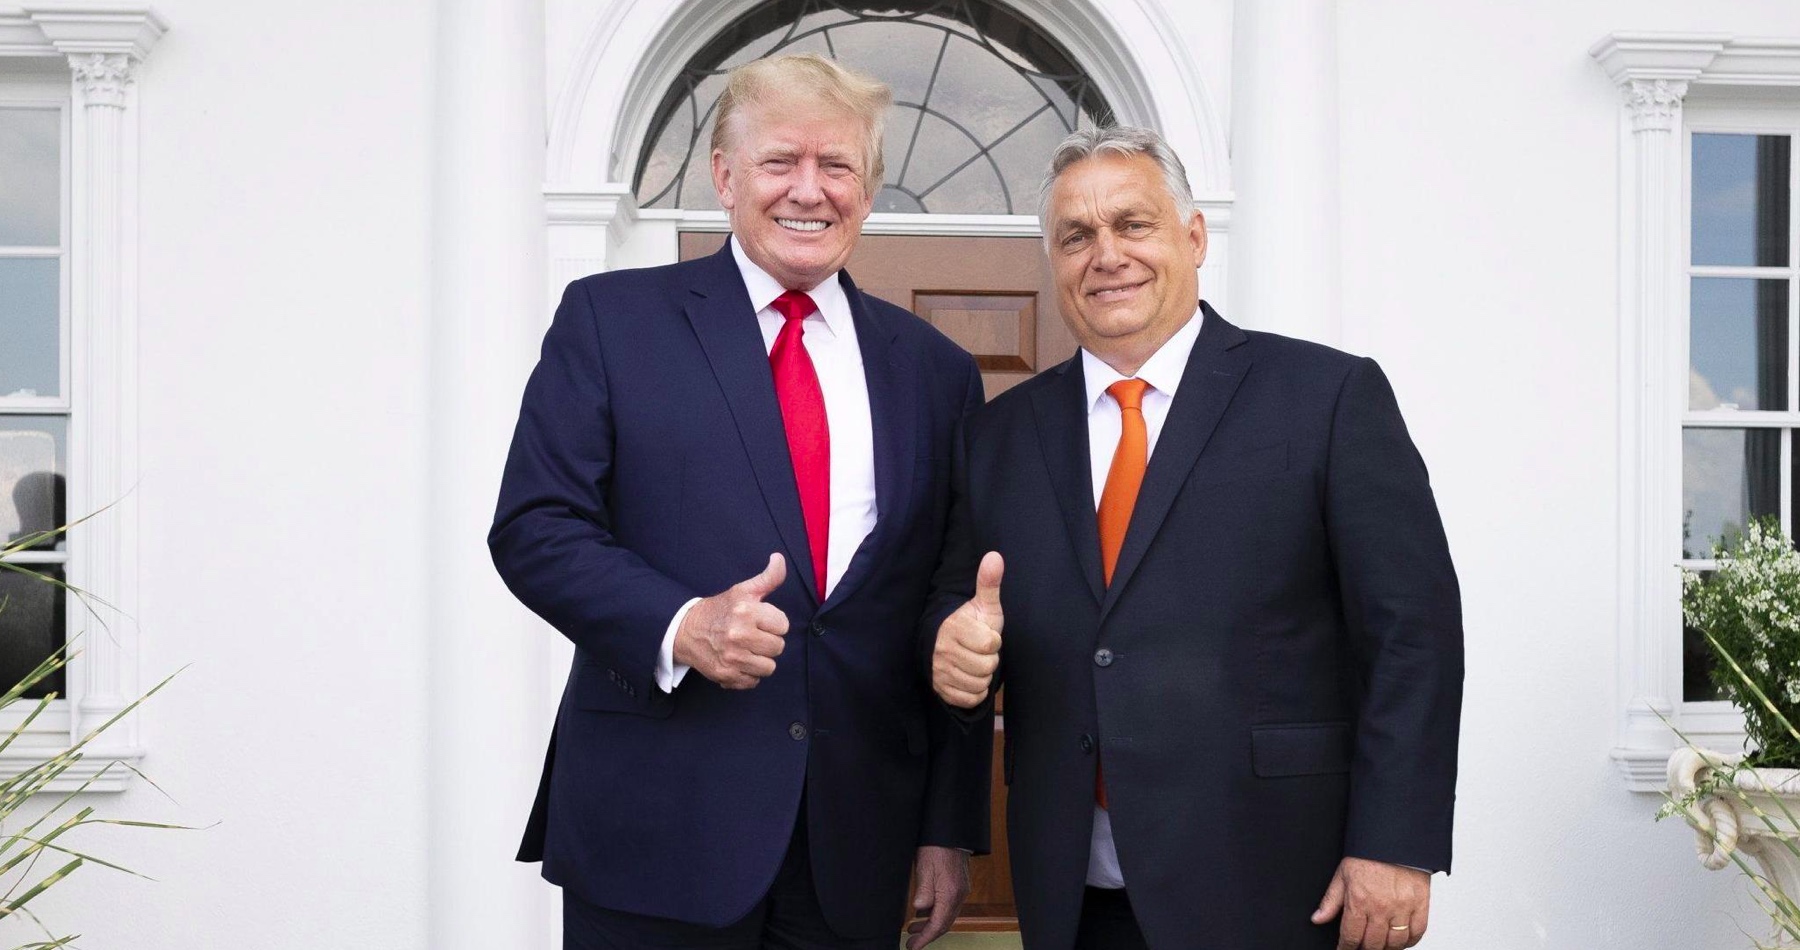 Vojna na Ukrajine podľa Orbána vypukla preto, lebo v USA nebol pri moci Donald Trump